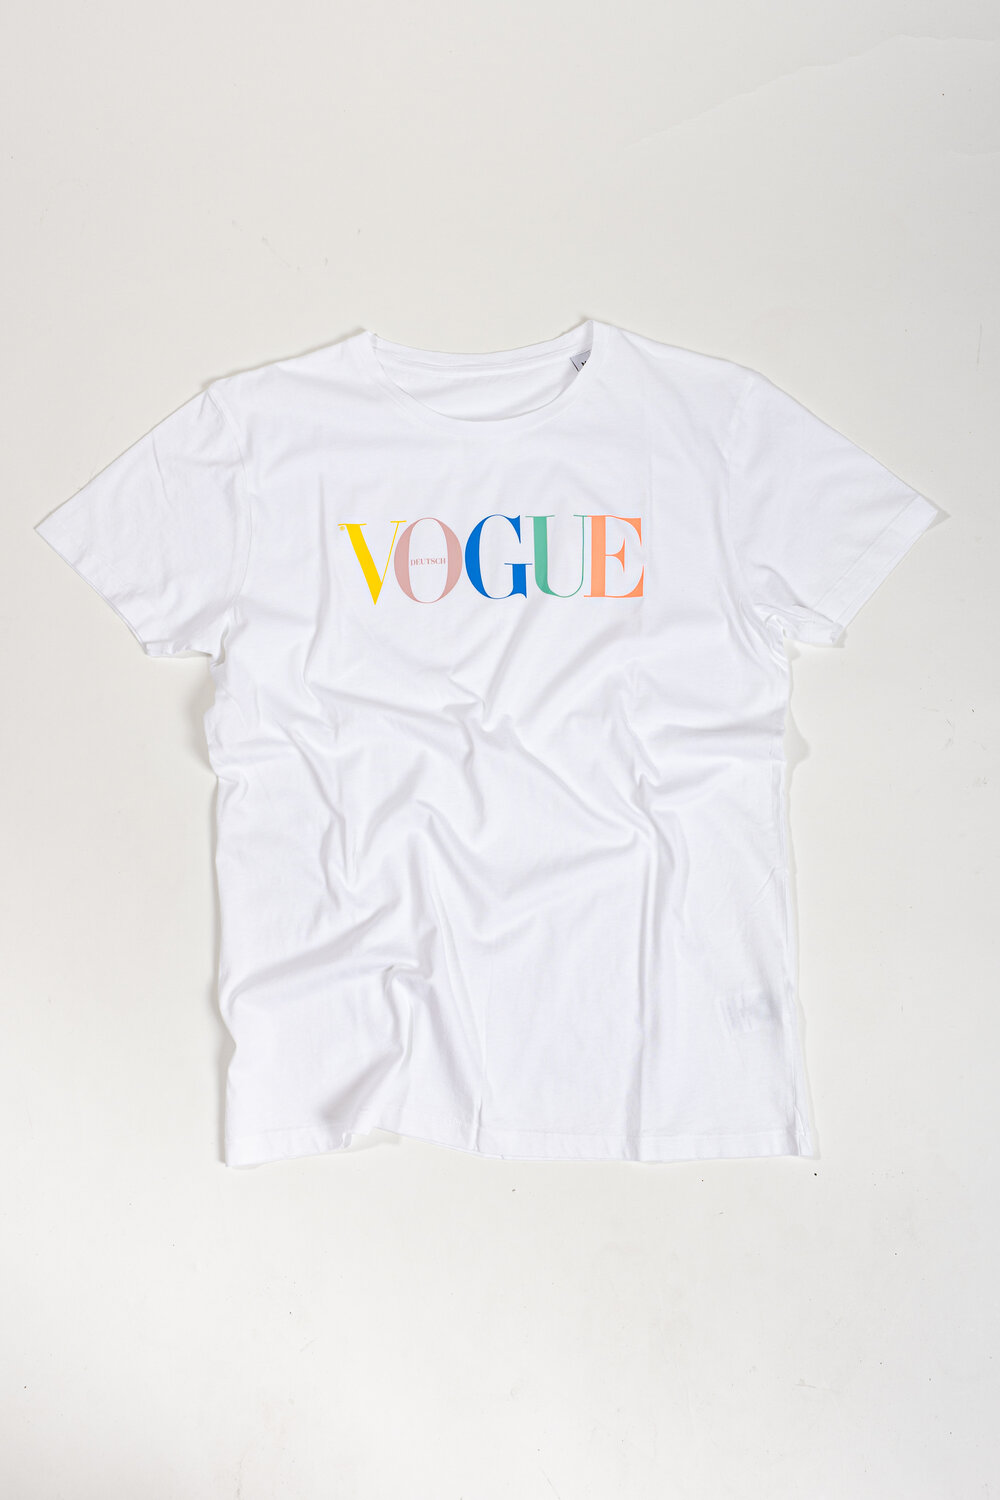 VOGUE T-Shirt bunt XL